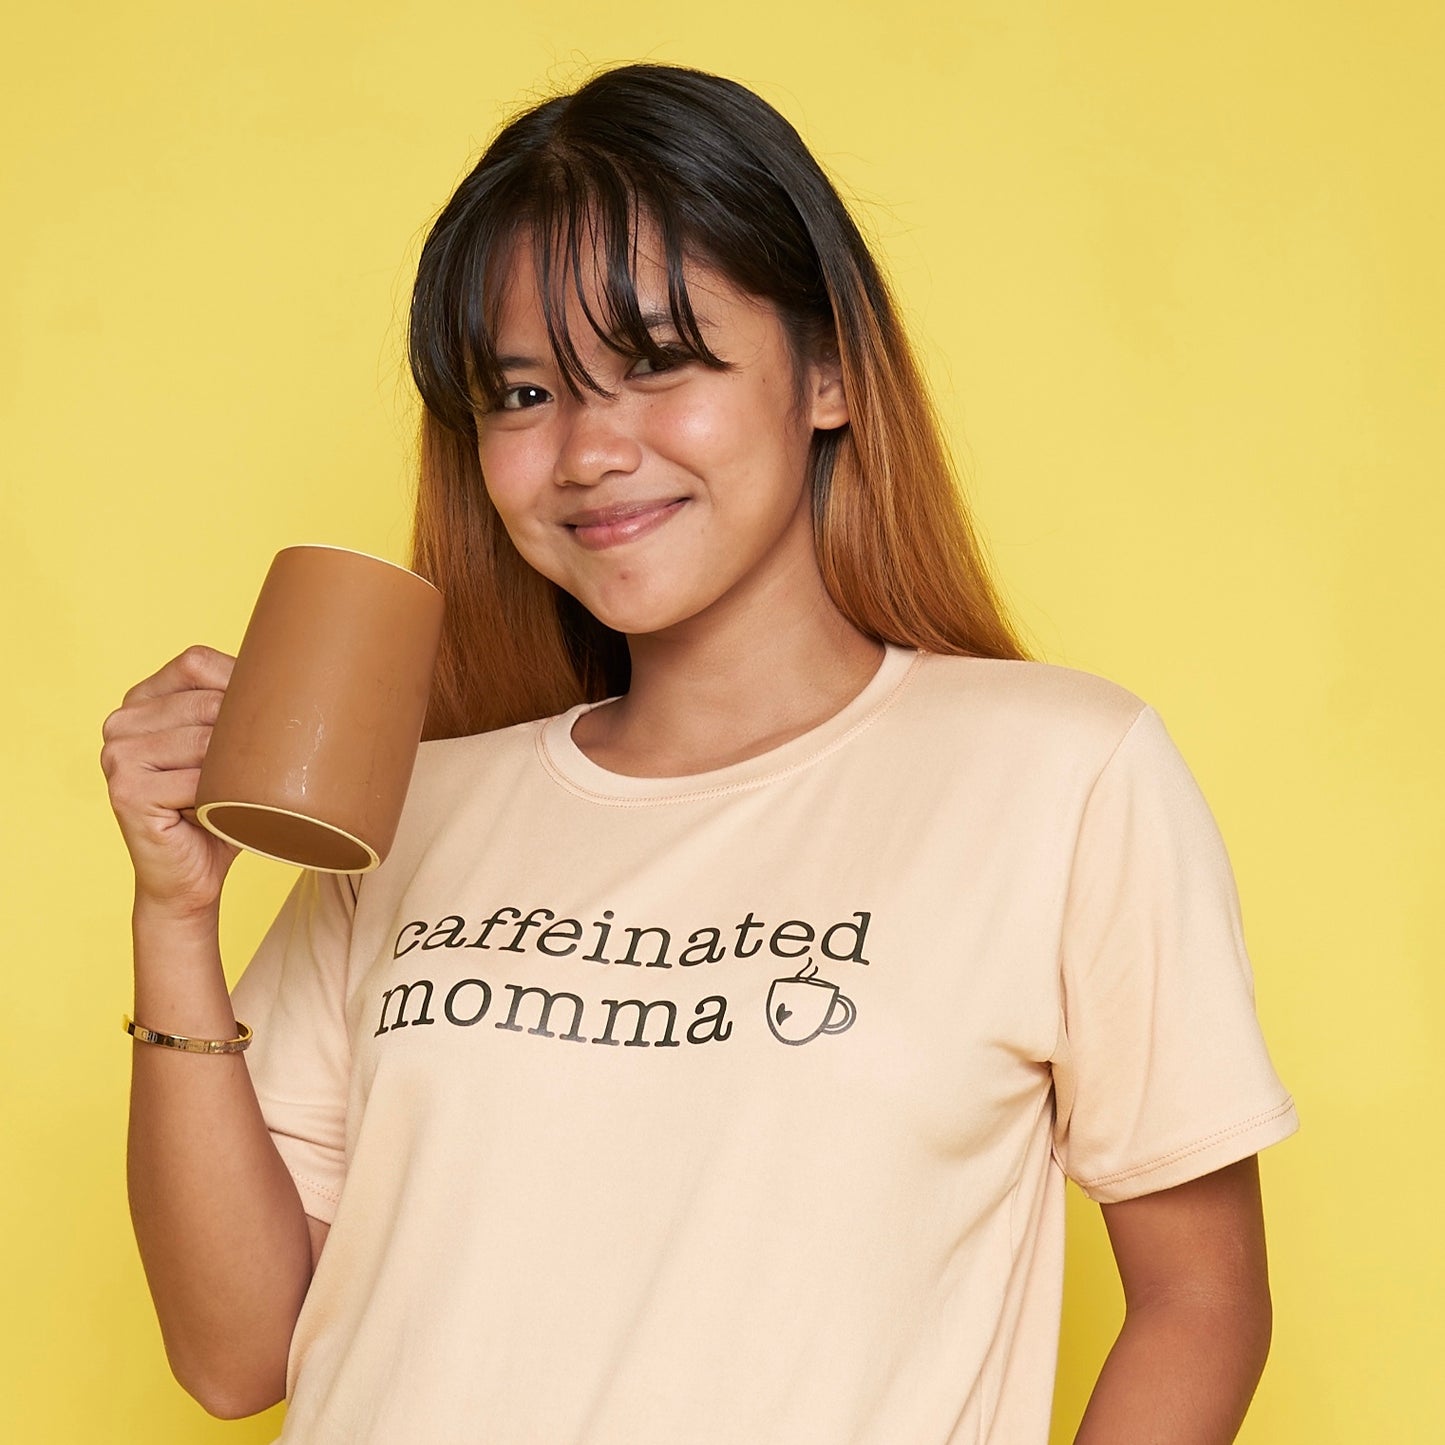 Caffeinated Mama Mom Statement Shirt